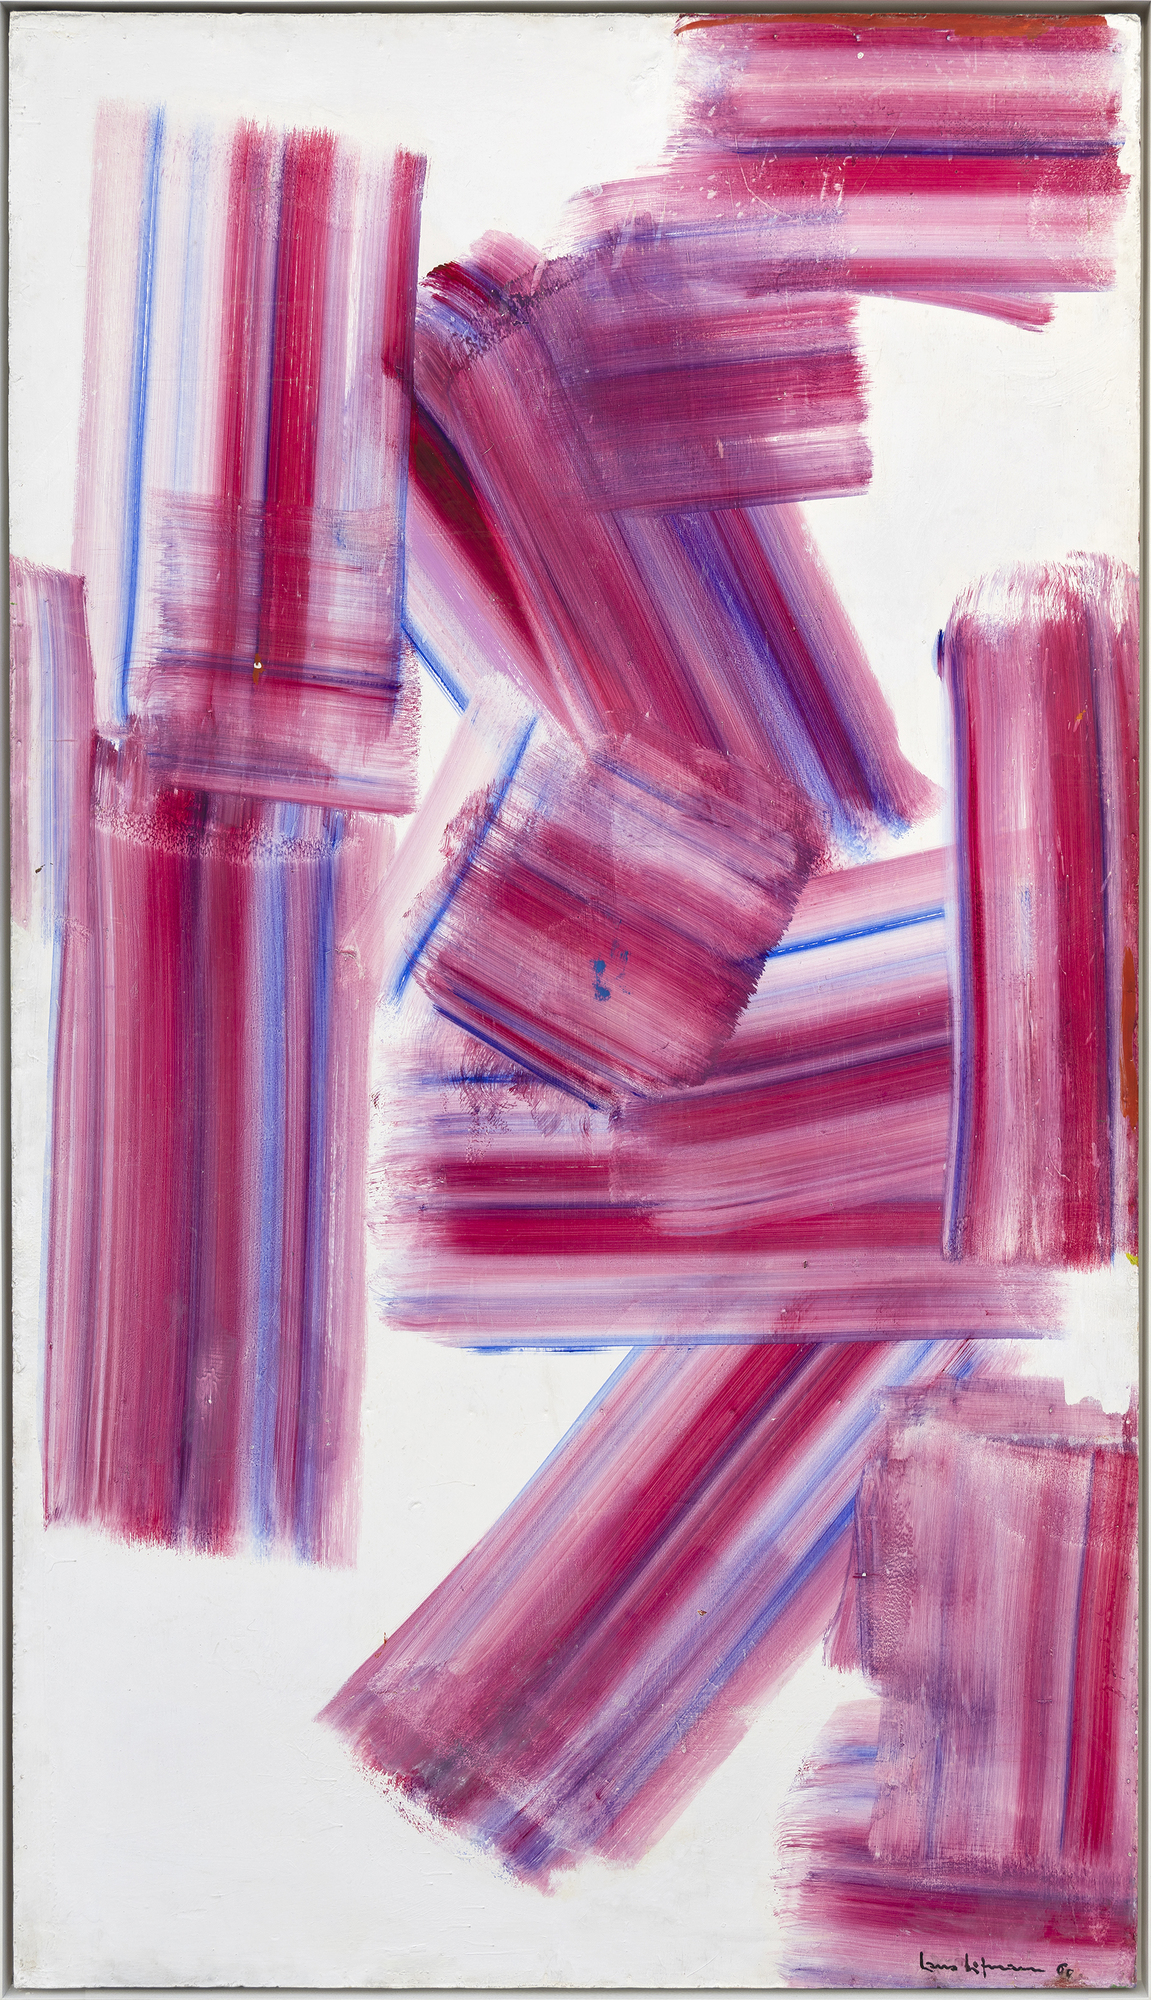 HANS HOFMANN - The Climb - oil on panel - 84 x 47 1/2 in.